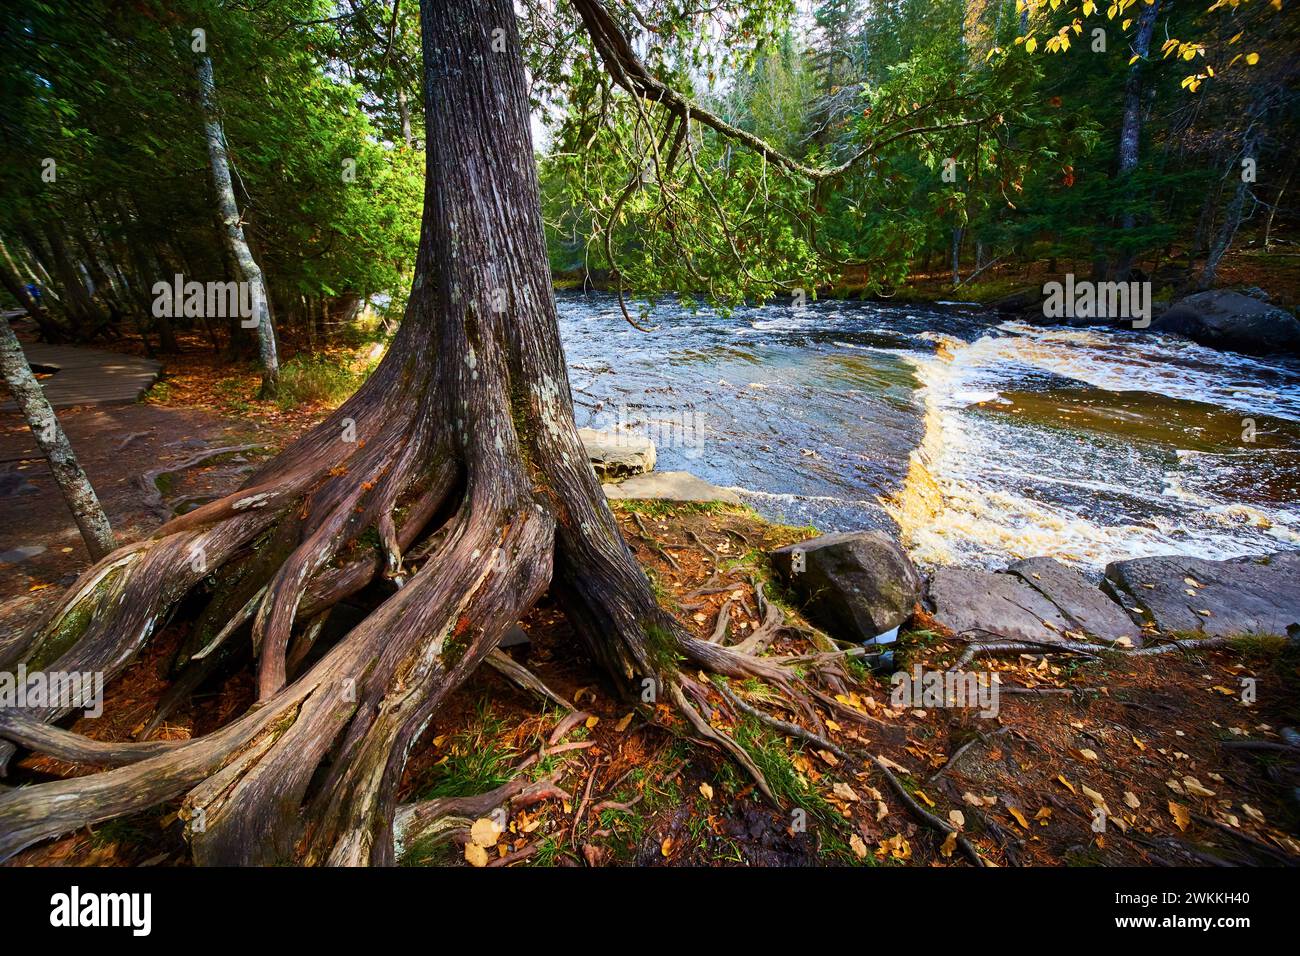 Río del bosque otoñal con raíces de árboles antiguos y corriente en cascada Foto de stock